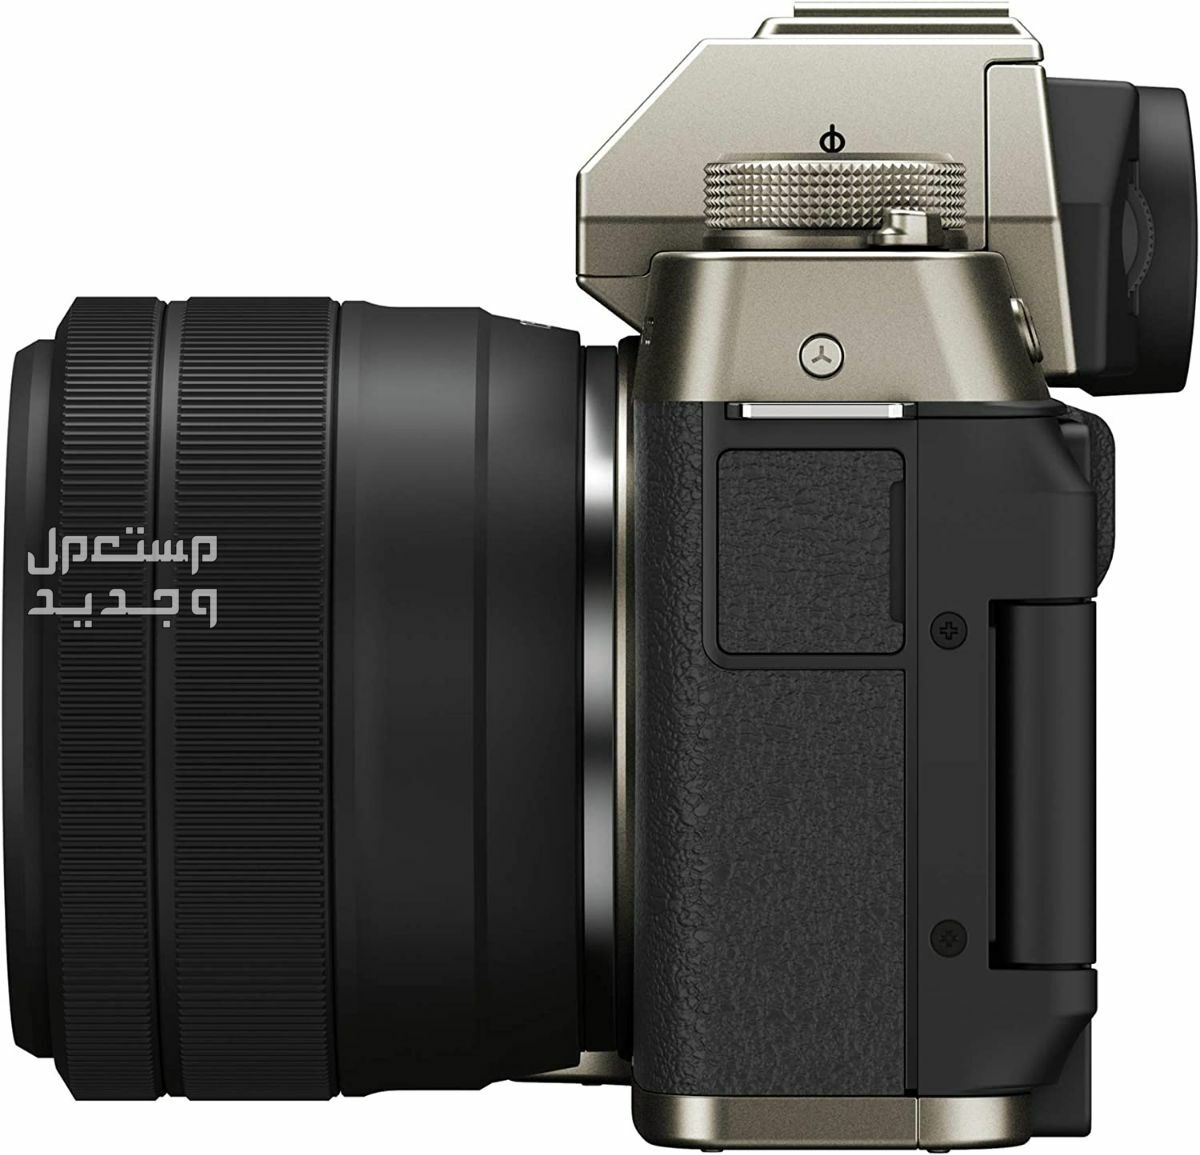 10 كاميرات تصوير ماركات عالمية بأسعار رخيصة في سوريا سعر كاميرا Fujifilm X-T200